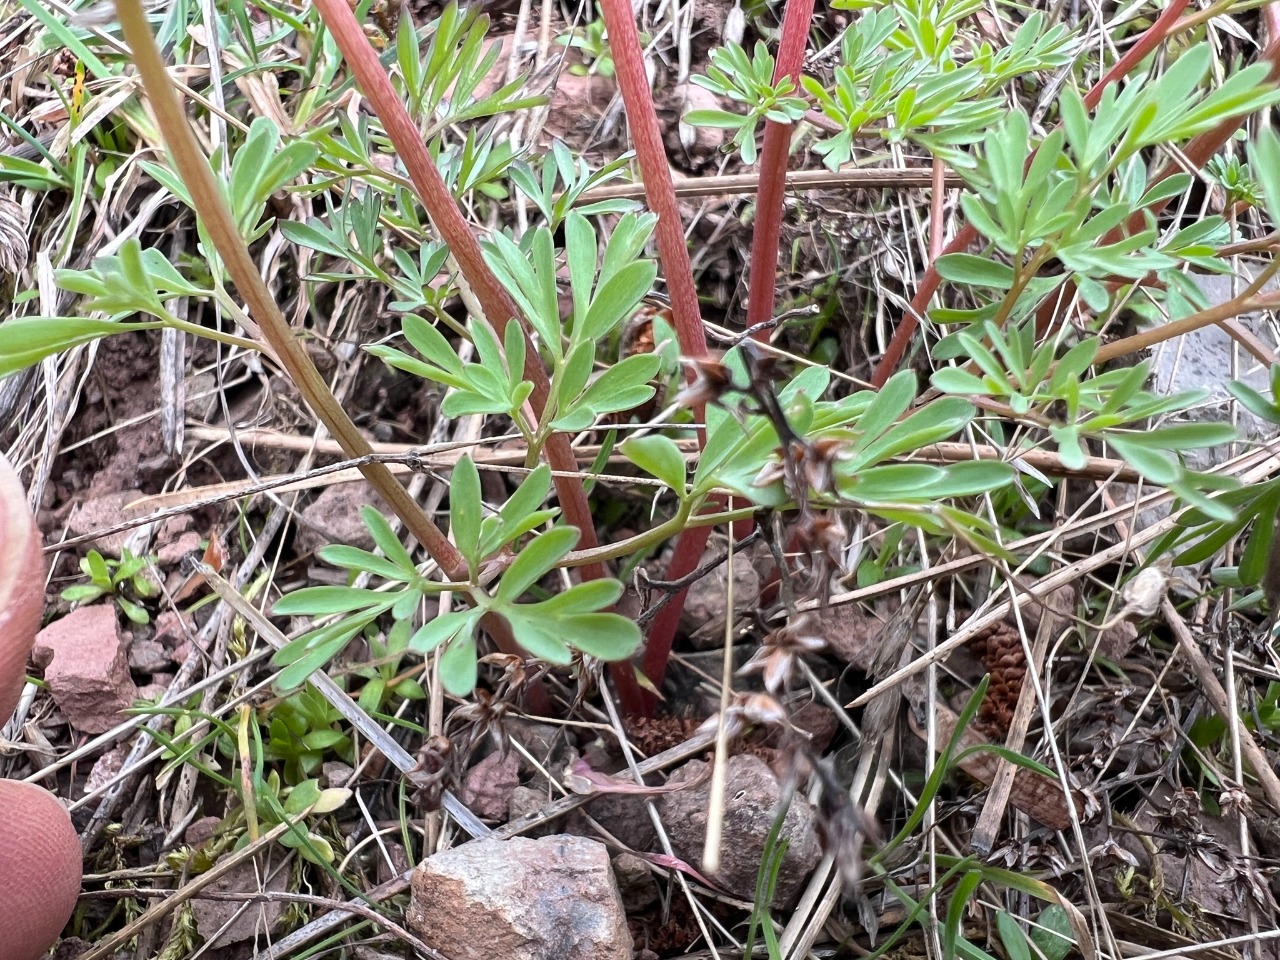 Corydalis wendelboi subsp. congesta